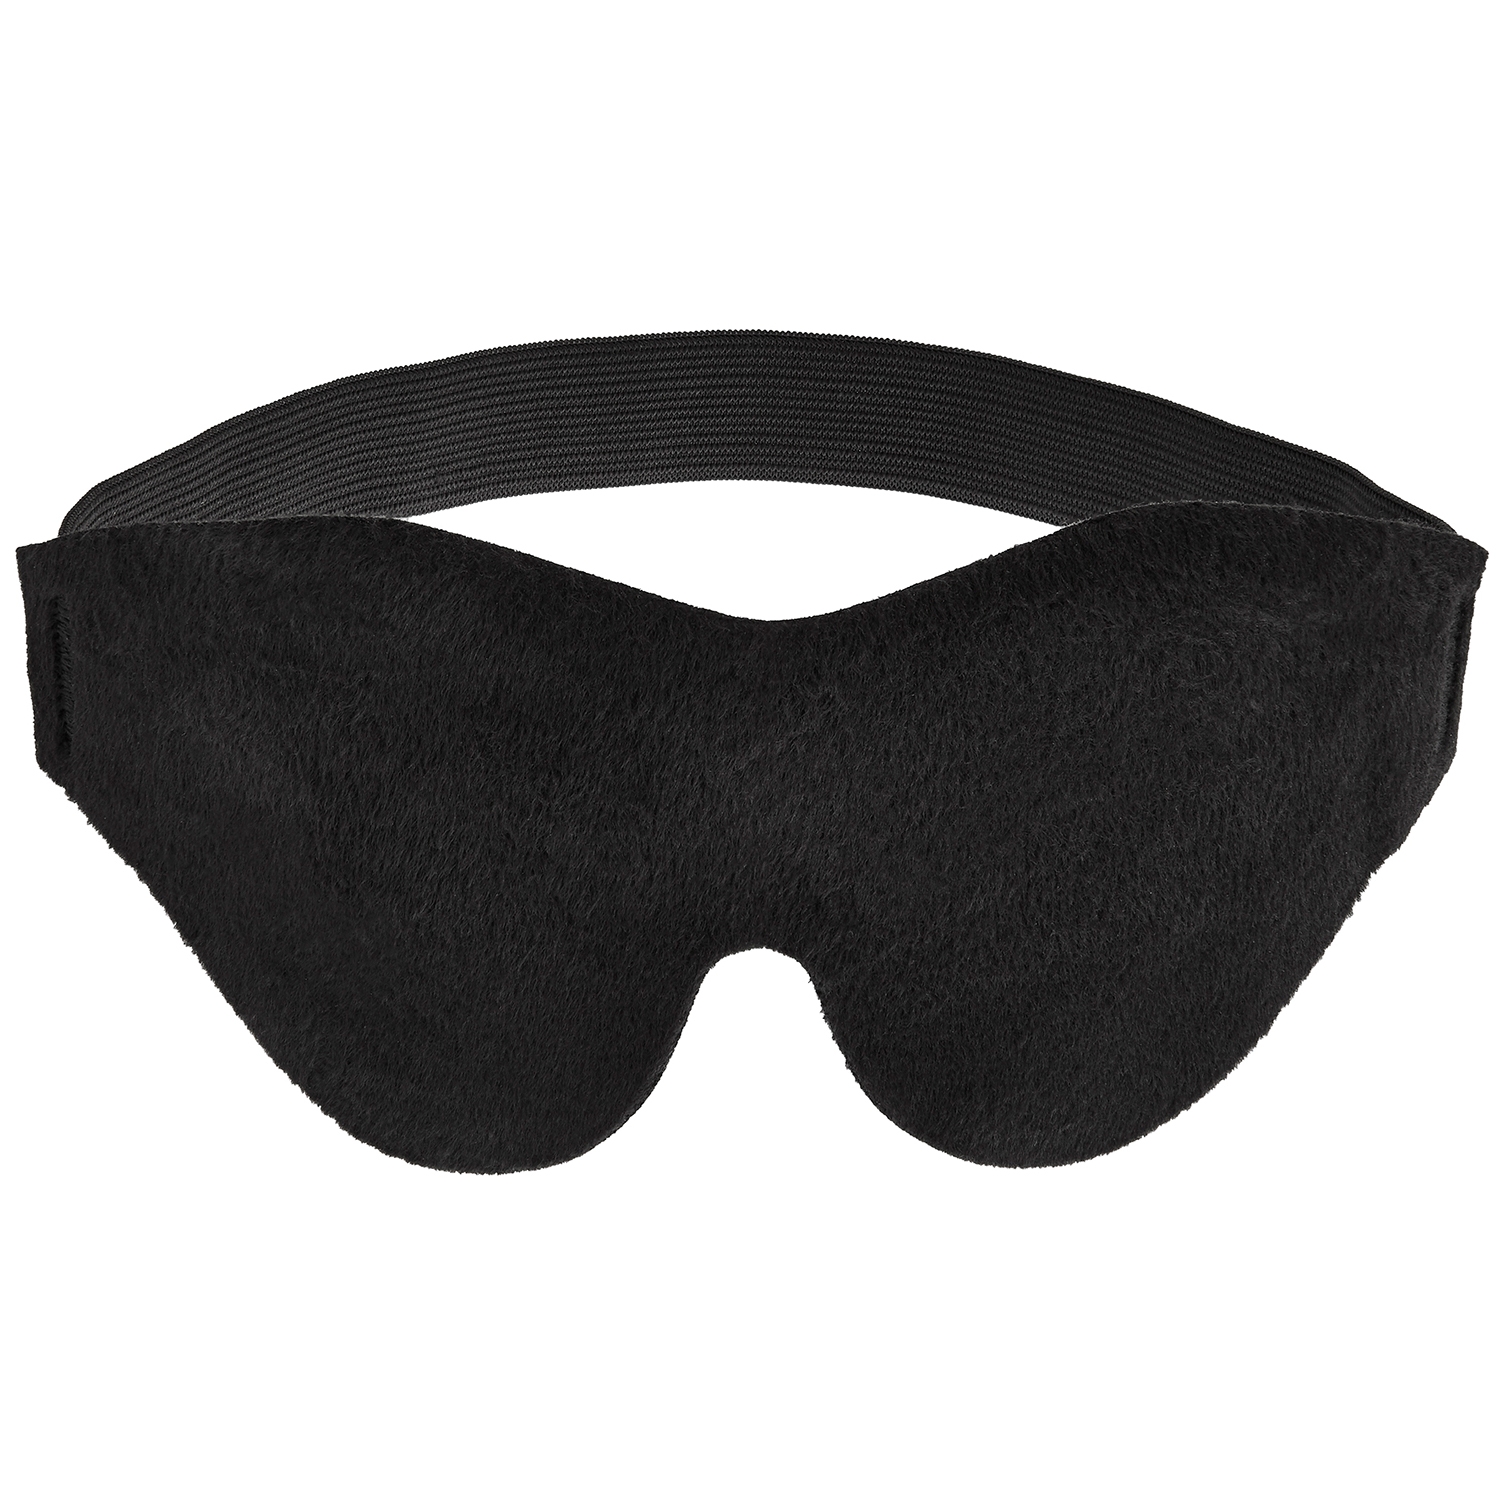 Sportsheets Blødt Blindfold - Black